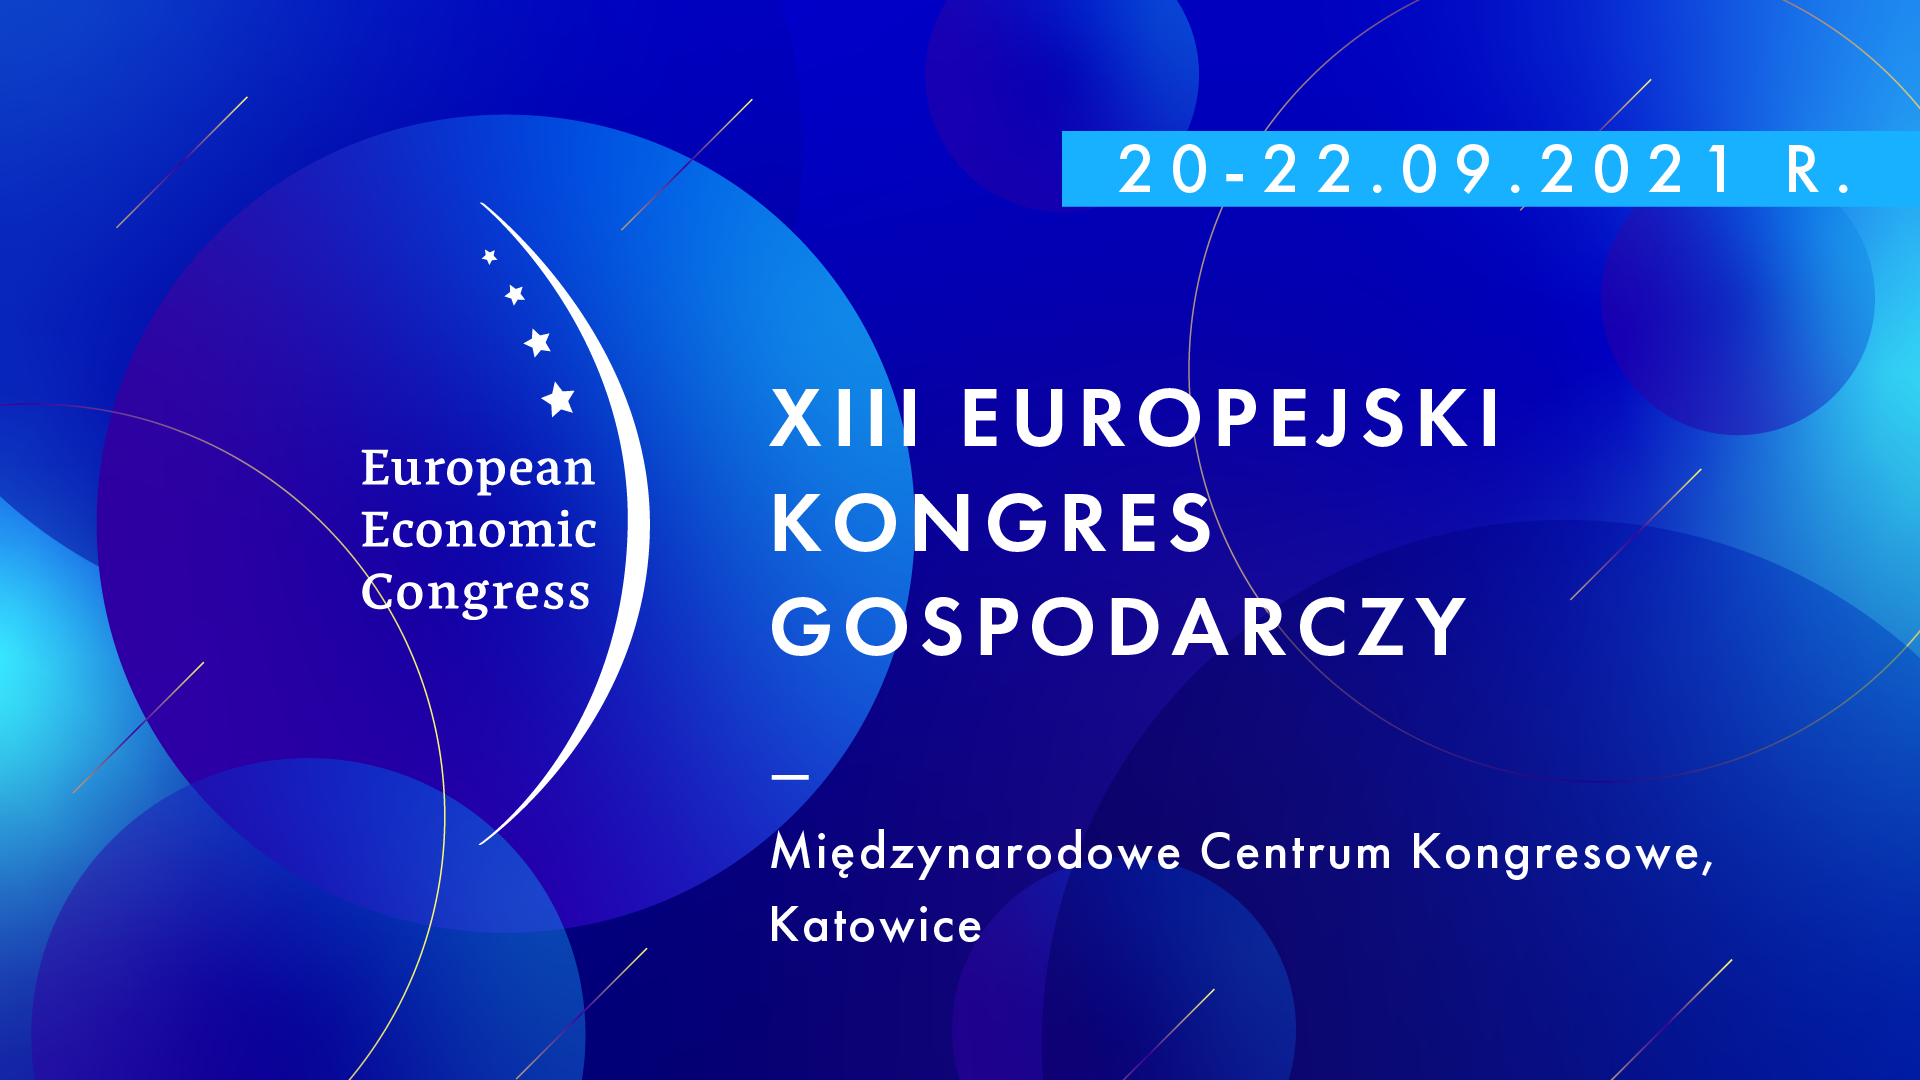 Przed nami Europejski Kongres Gospodarczy w Katowicach